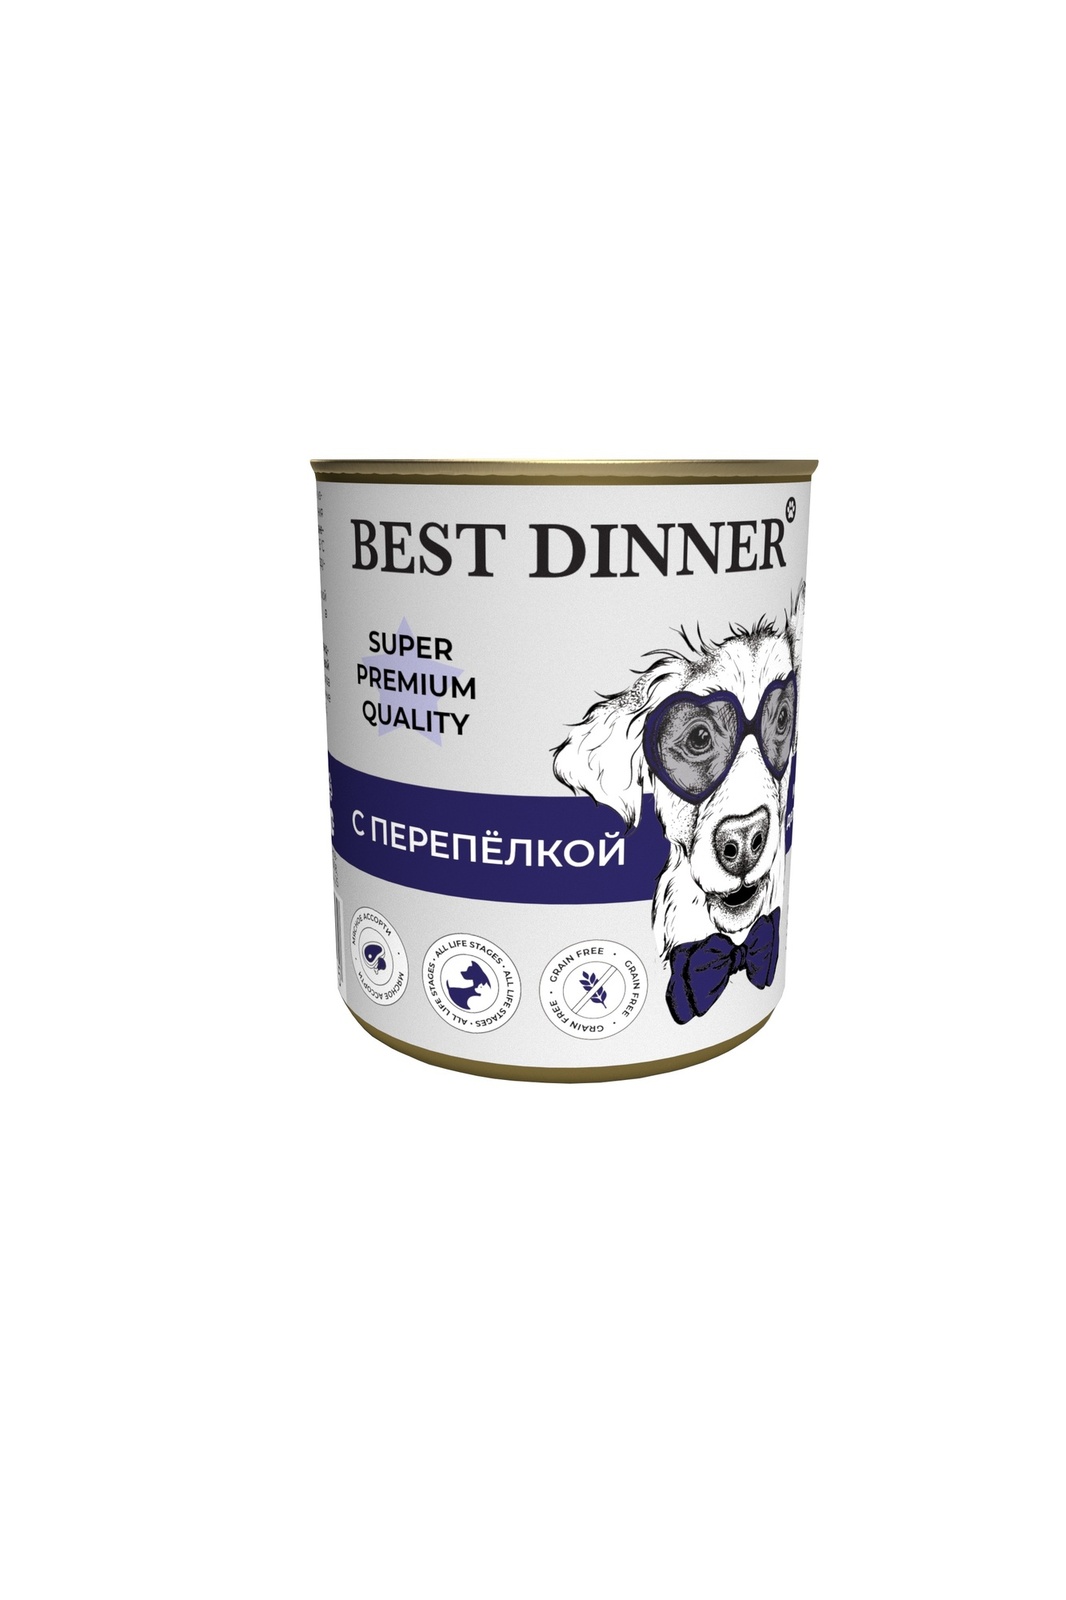 Best Dinner Best Dinner консервы для собак Super Premium С перепелкой (340 г) best dinner best dinner гипоаллергенные консервы индейка и кролик для собак всех пород 340 г